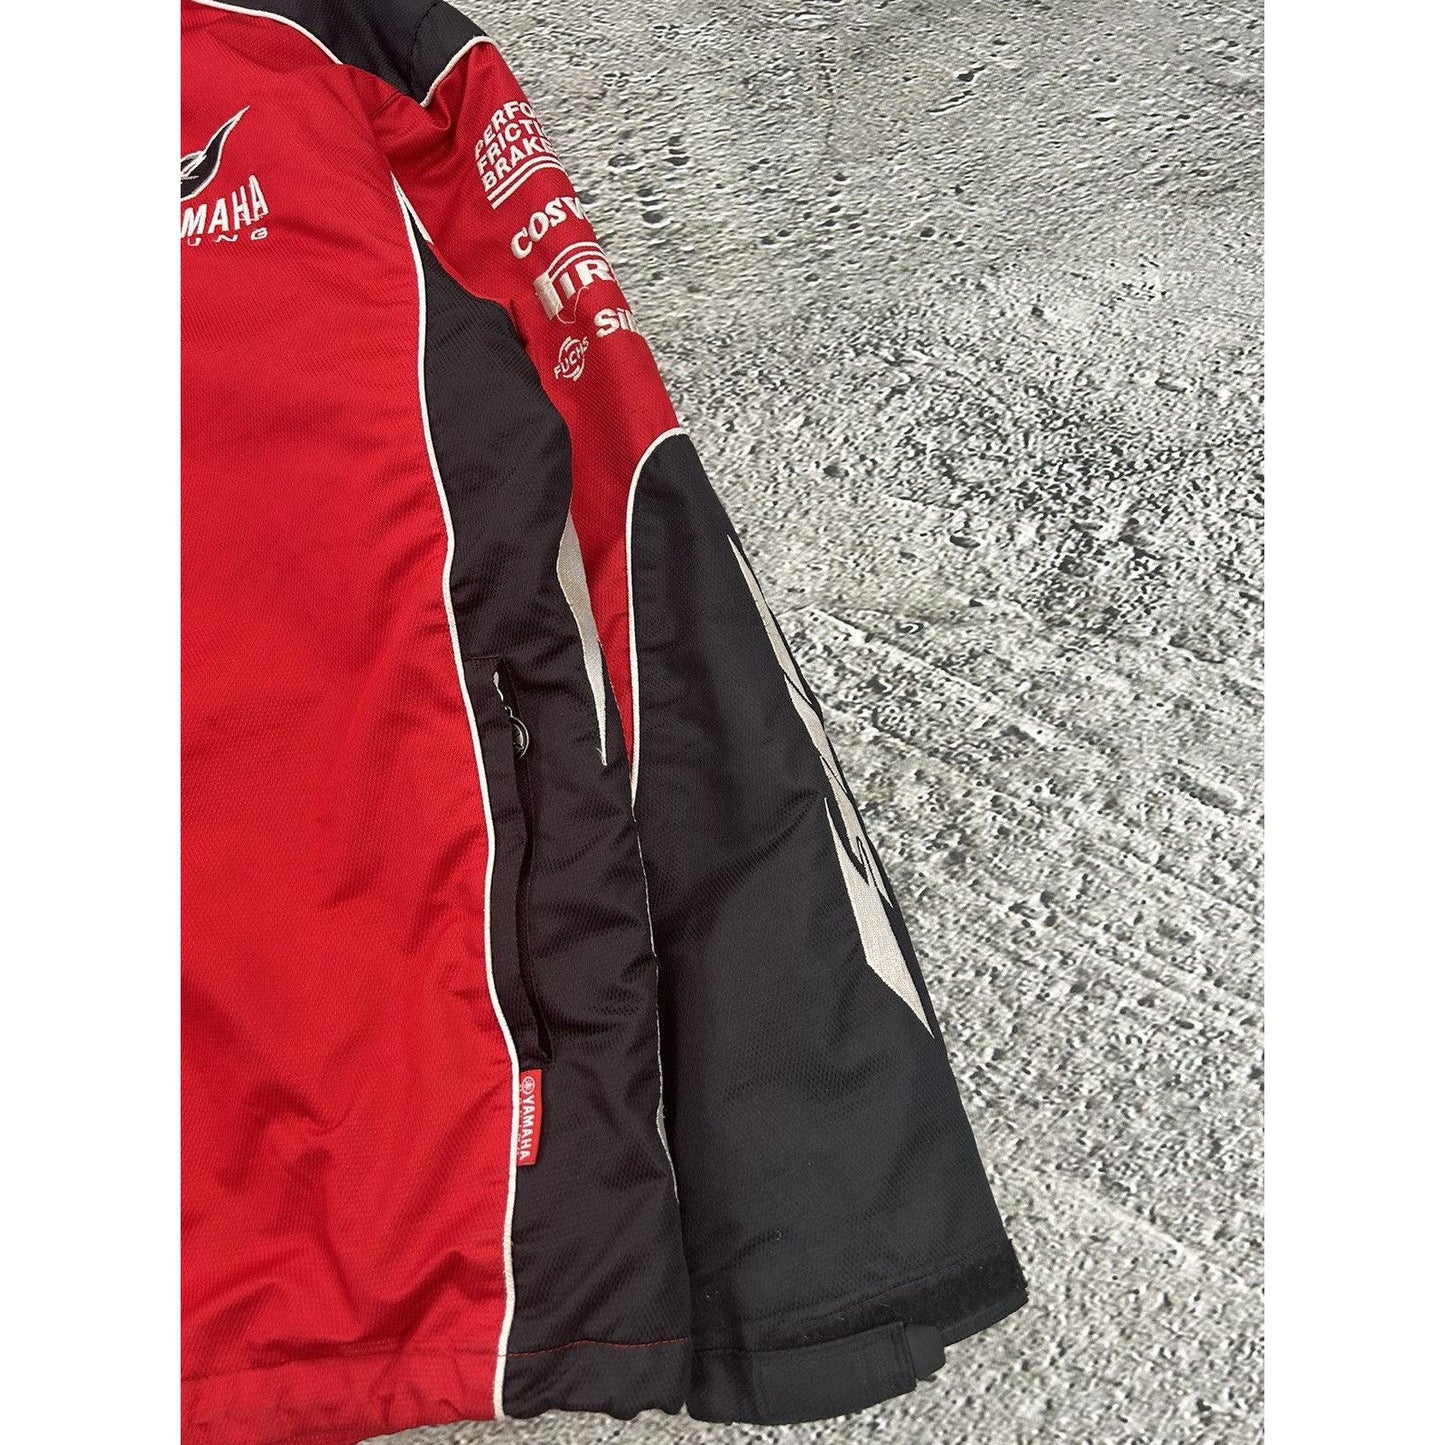 Yamaha Racing Sports Jacket vintage virgin